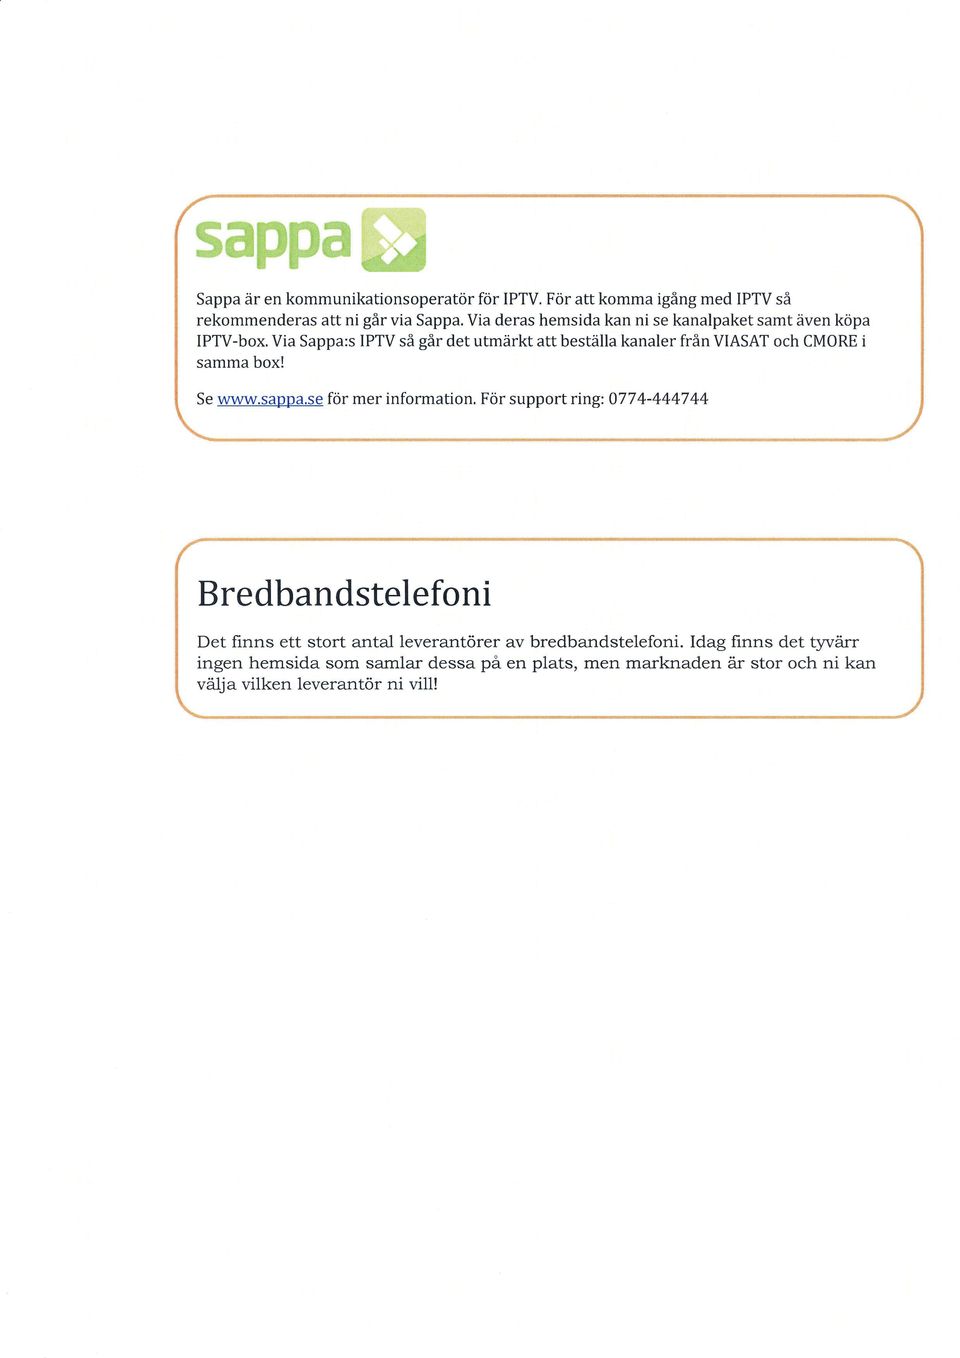 Via Sappa:s IPTV så går det utmärkt att beställa kanaler från VIASAT och CMORE i samma box! www.sappä.se för mer information.